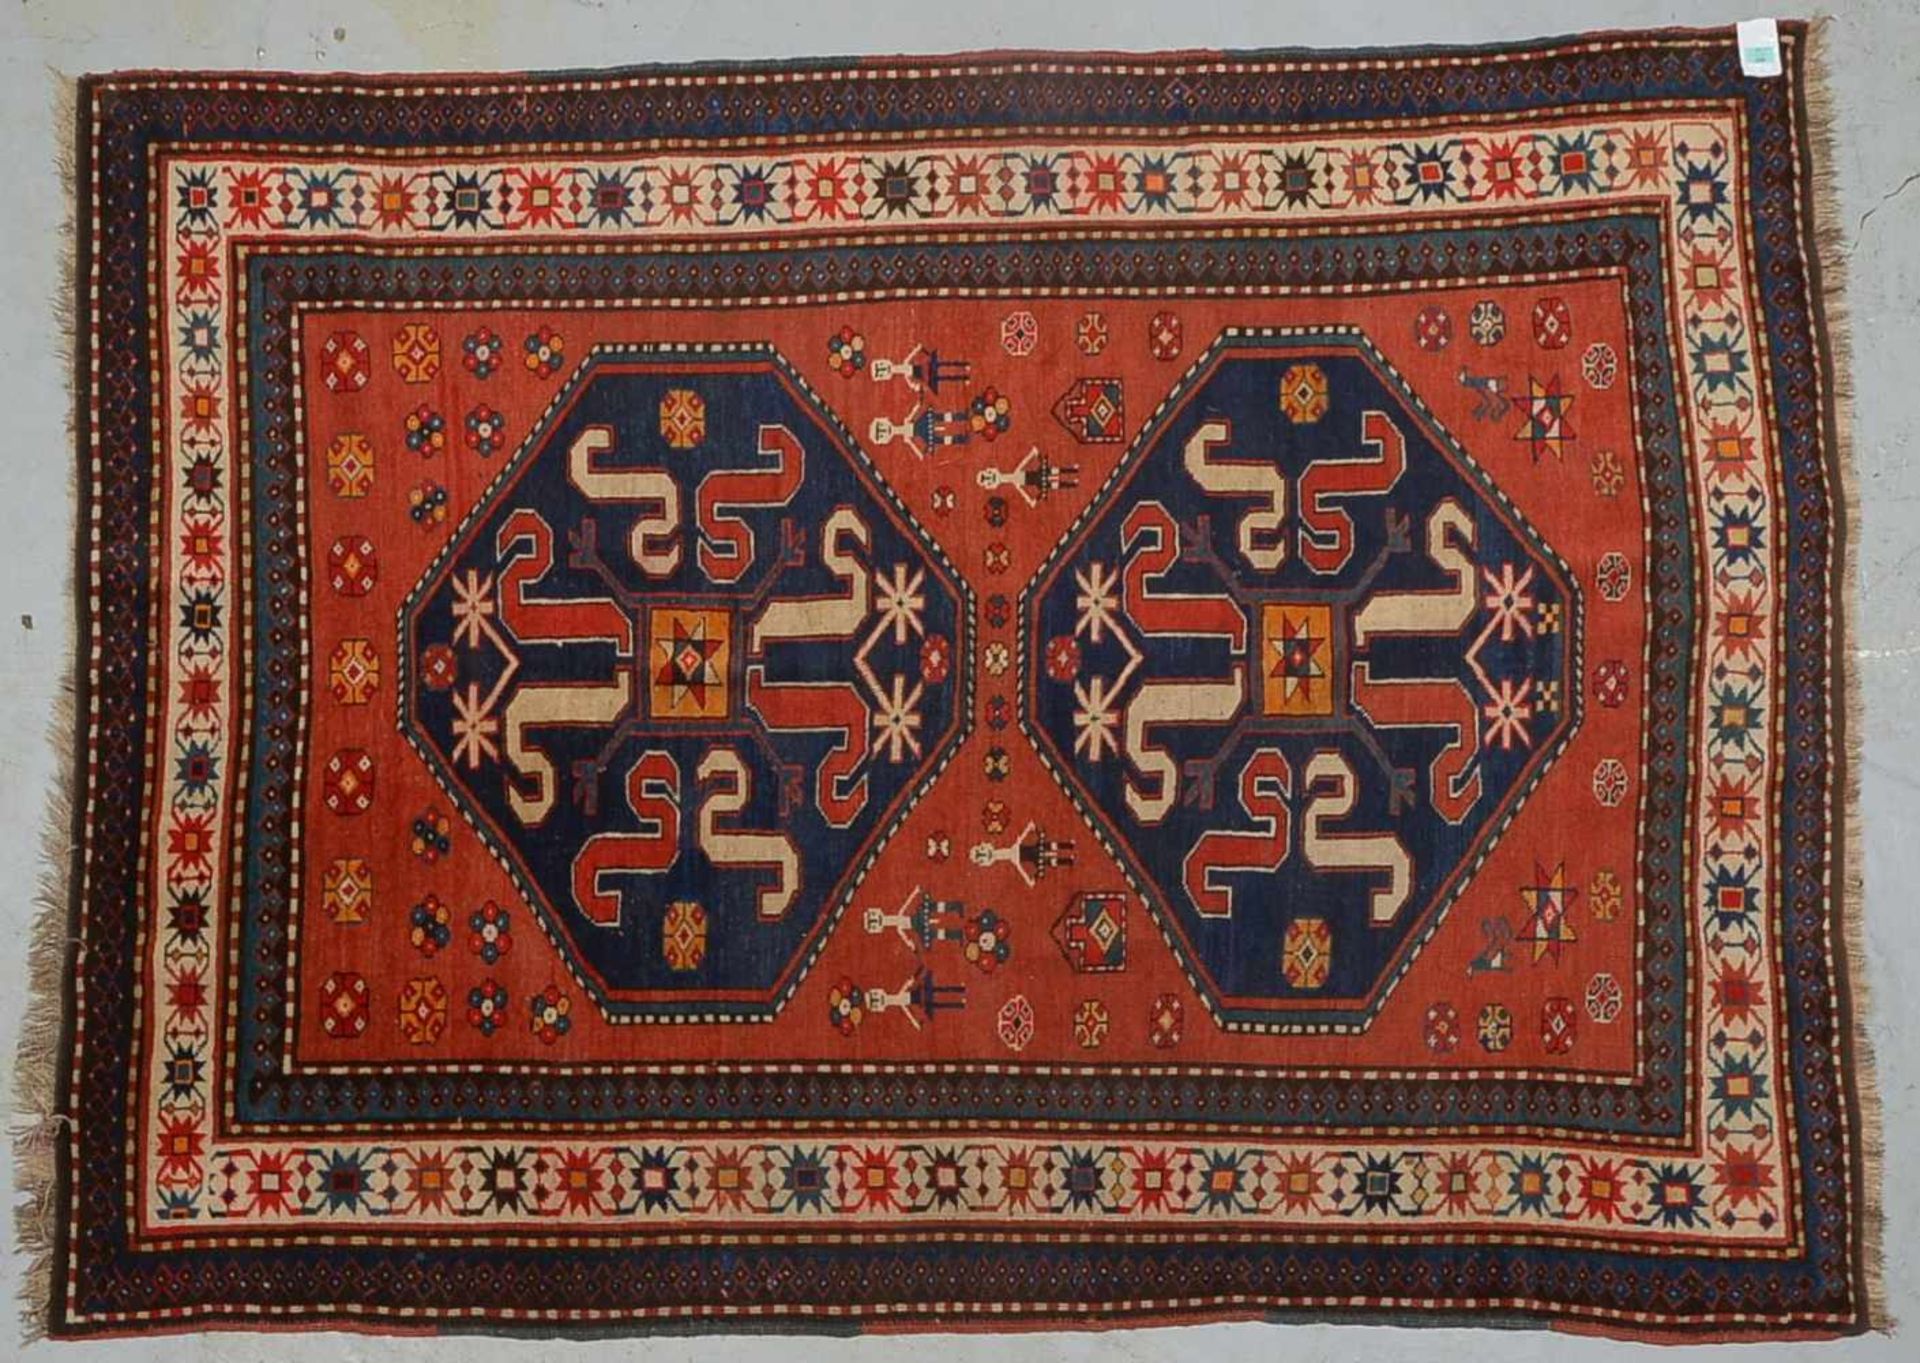 Kazak (um 1920/1930), ringsum komplett, Schmalseiten festoniert, Flor in gleichmäßigem Zustand; Maße